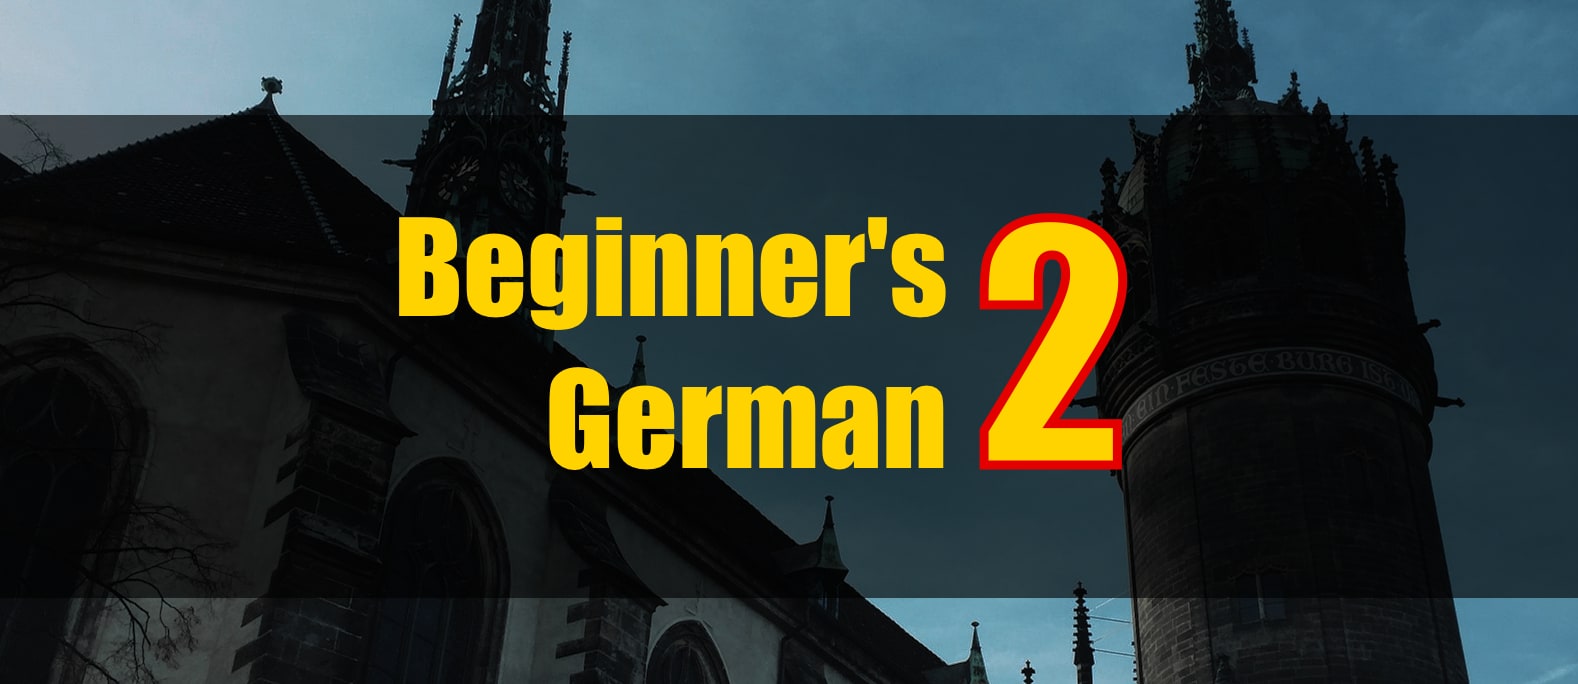 Beginner's German 2